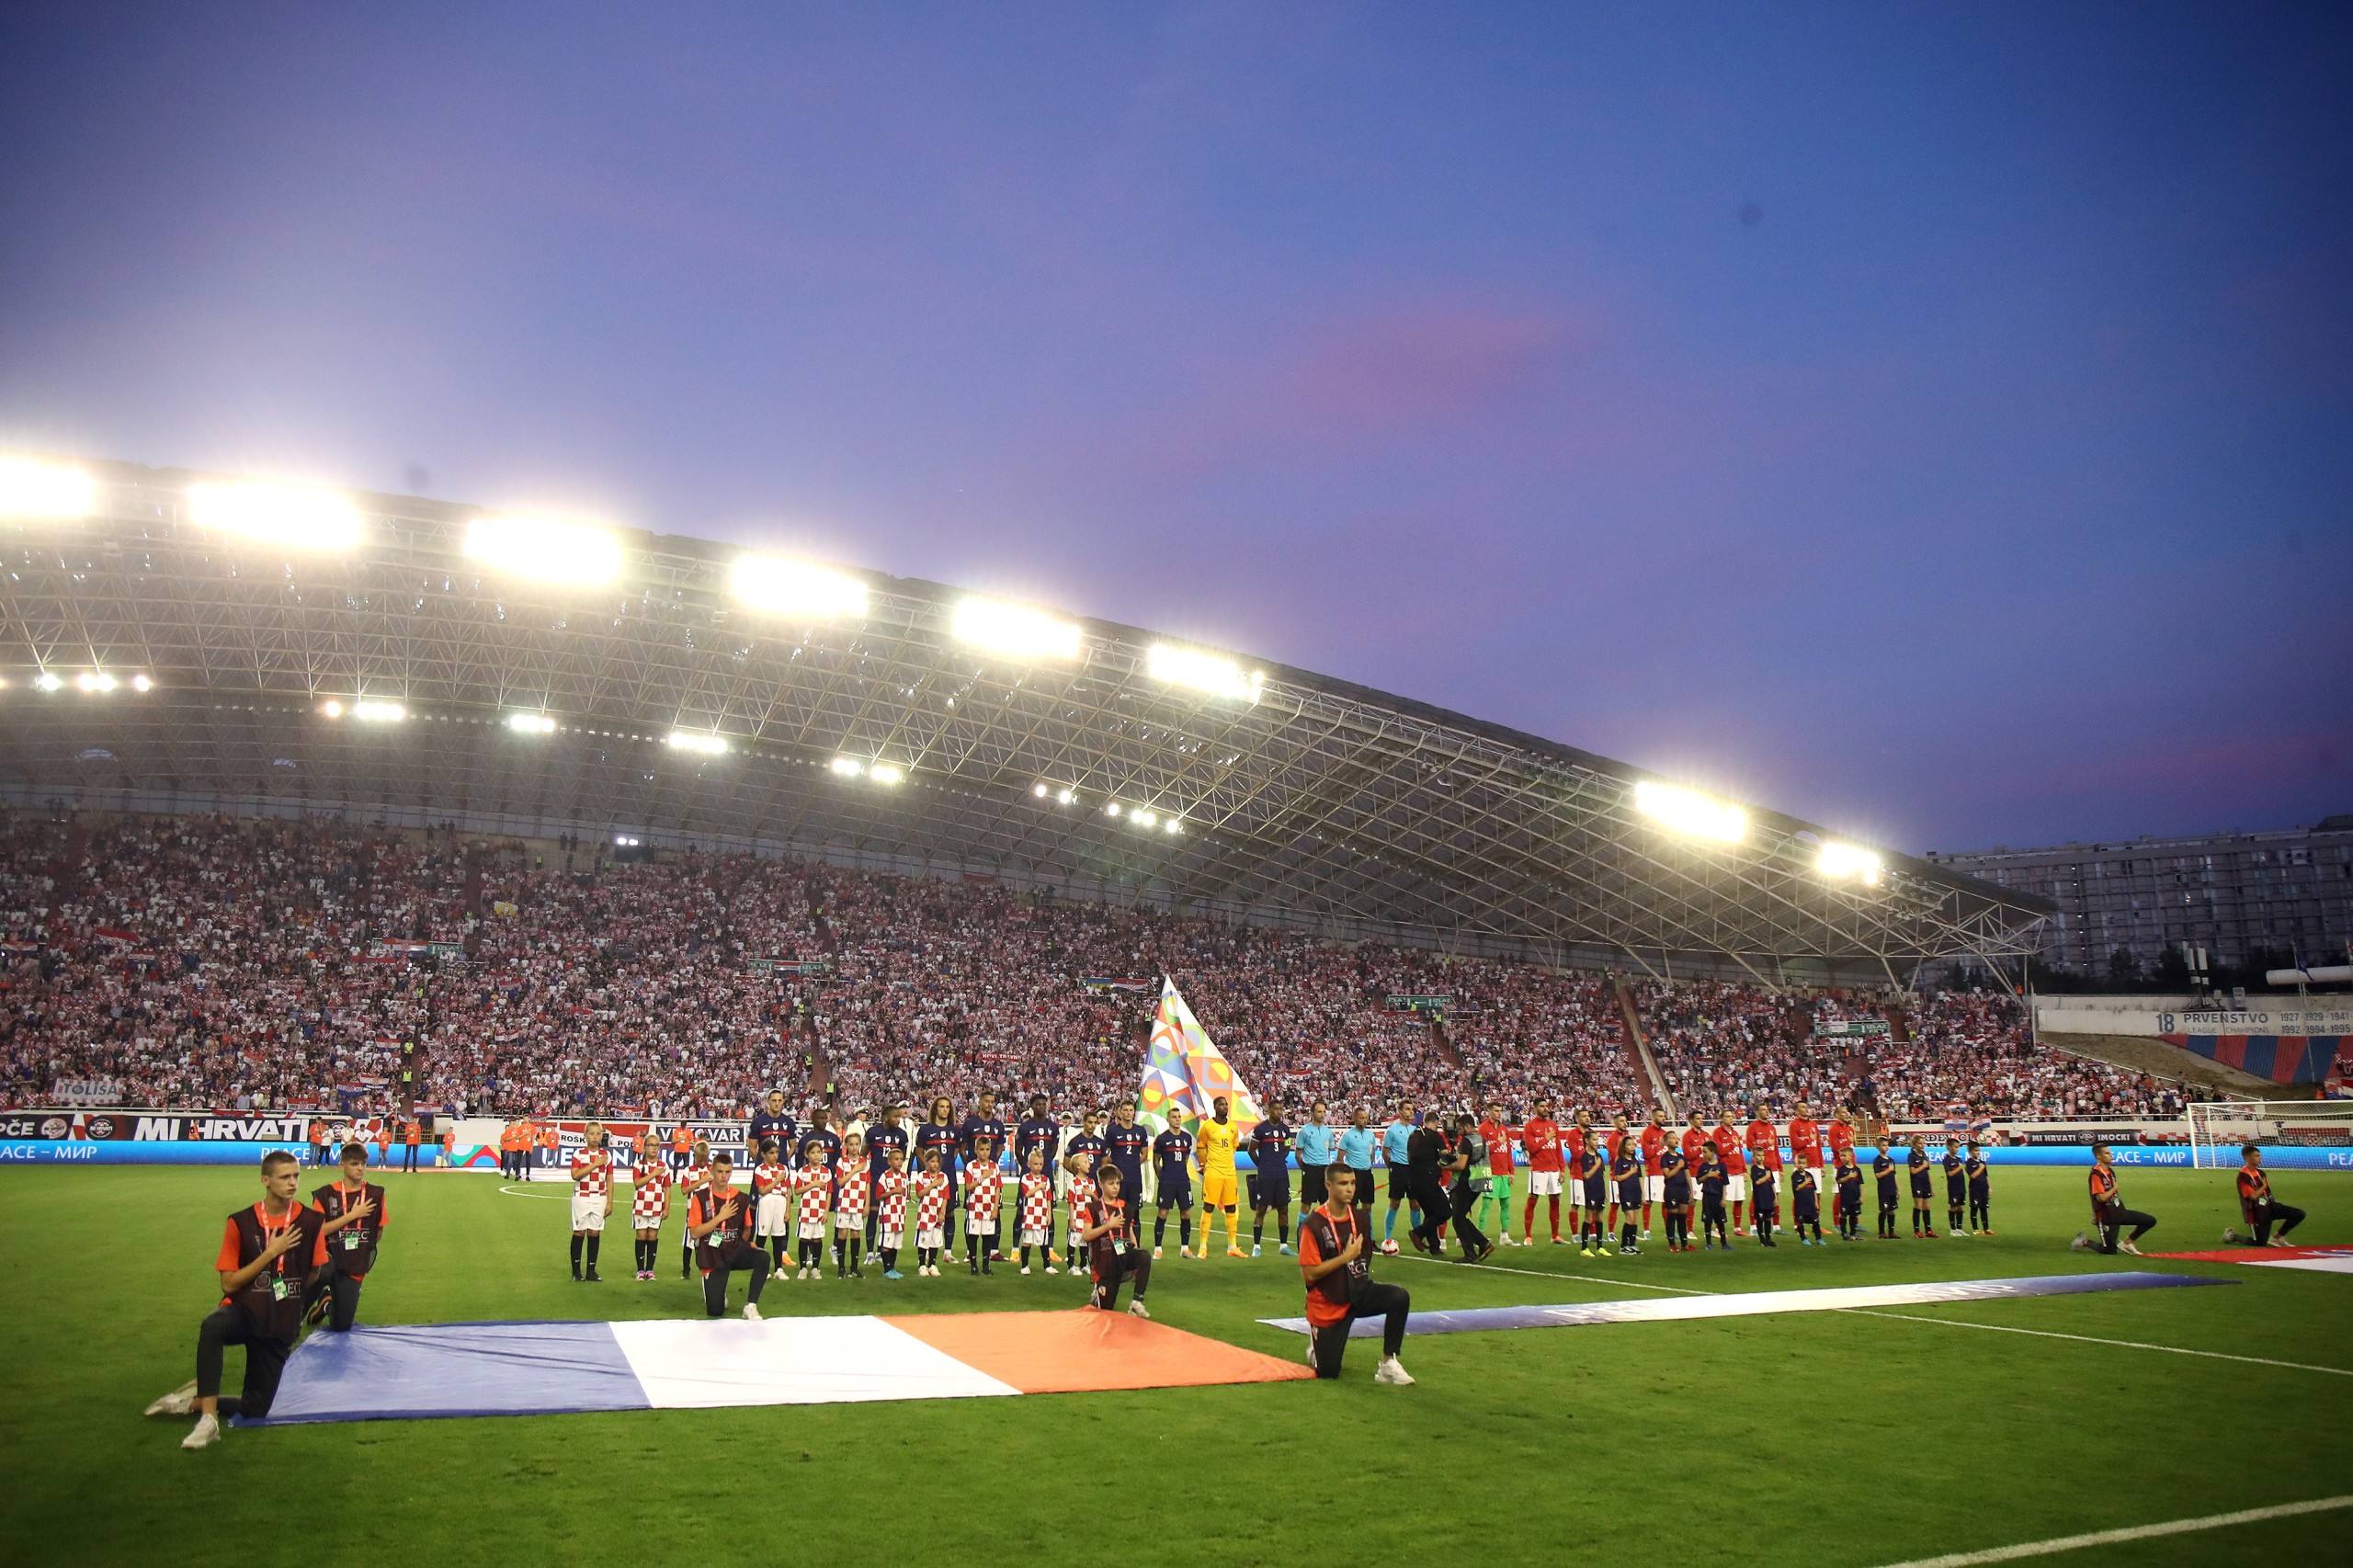 06.06.2022., stadion Poljud, Split - UEFA Liga nacija, Liga A, skupina 1, 2. kolo, Hrvatska - Francuska.  Photo: Luka Stanzl/PIXSELL